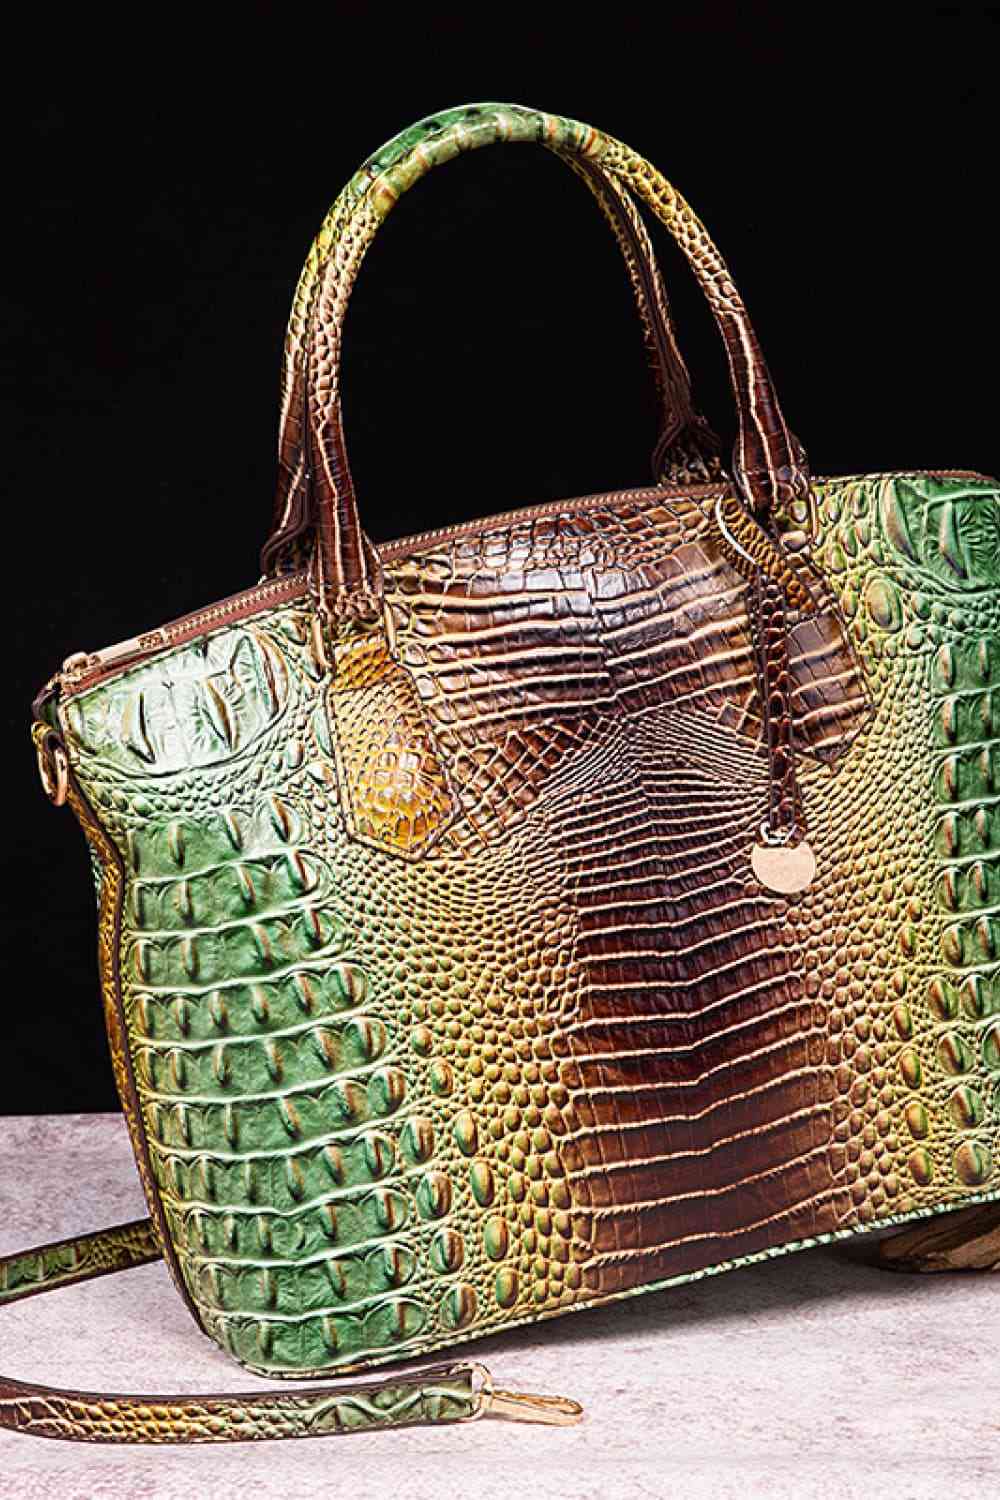 TEEK - Gradient Style Scheduler Handbag BAG TEEK Trend Green/Brown  